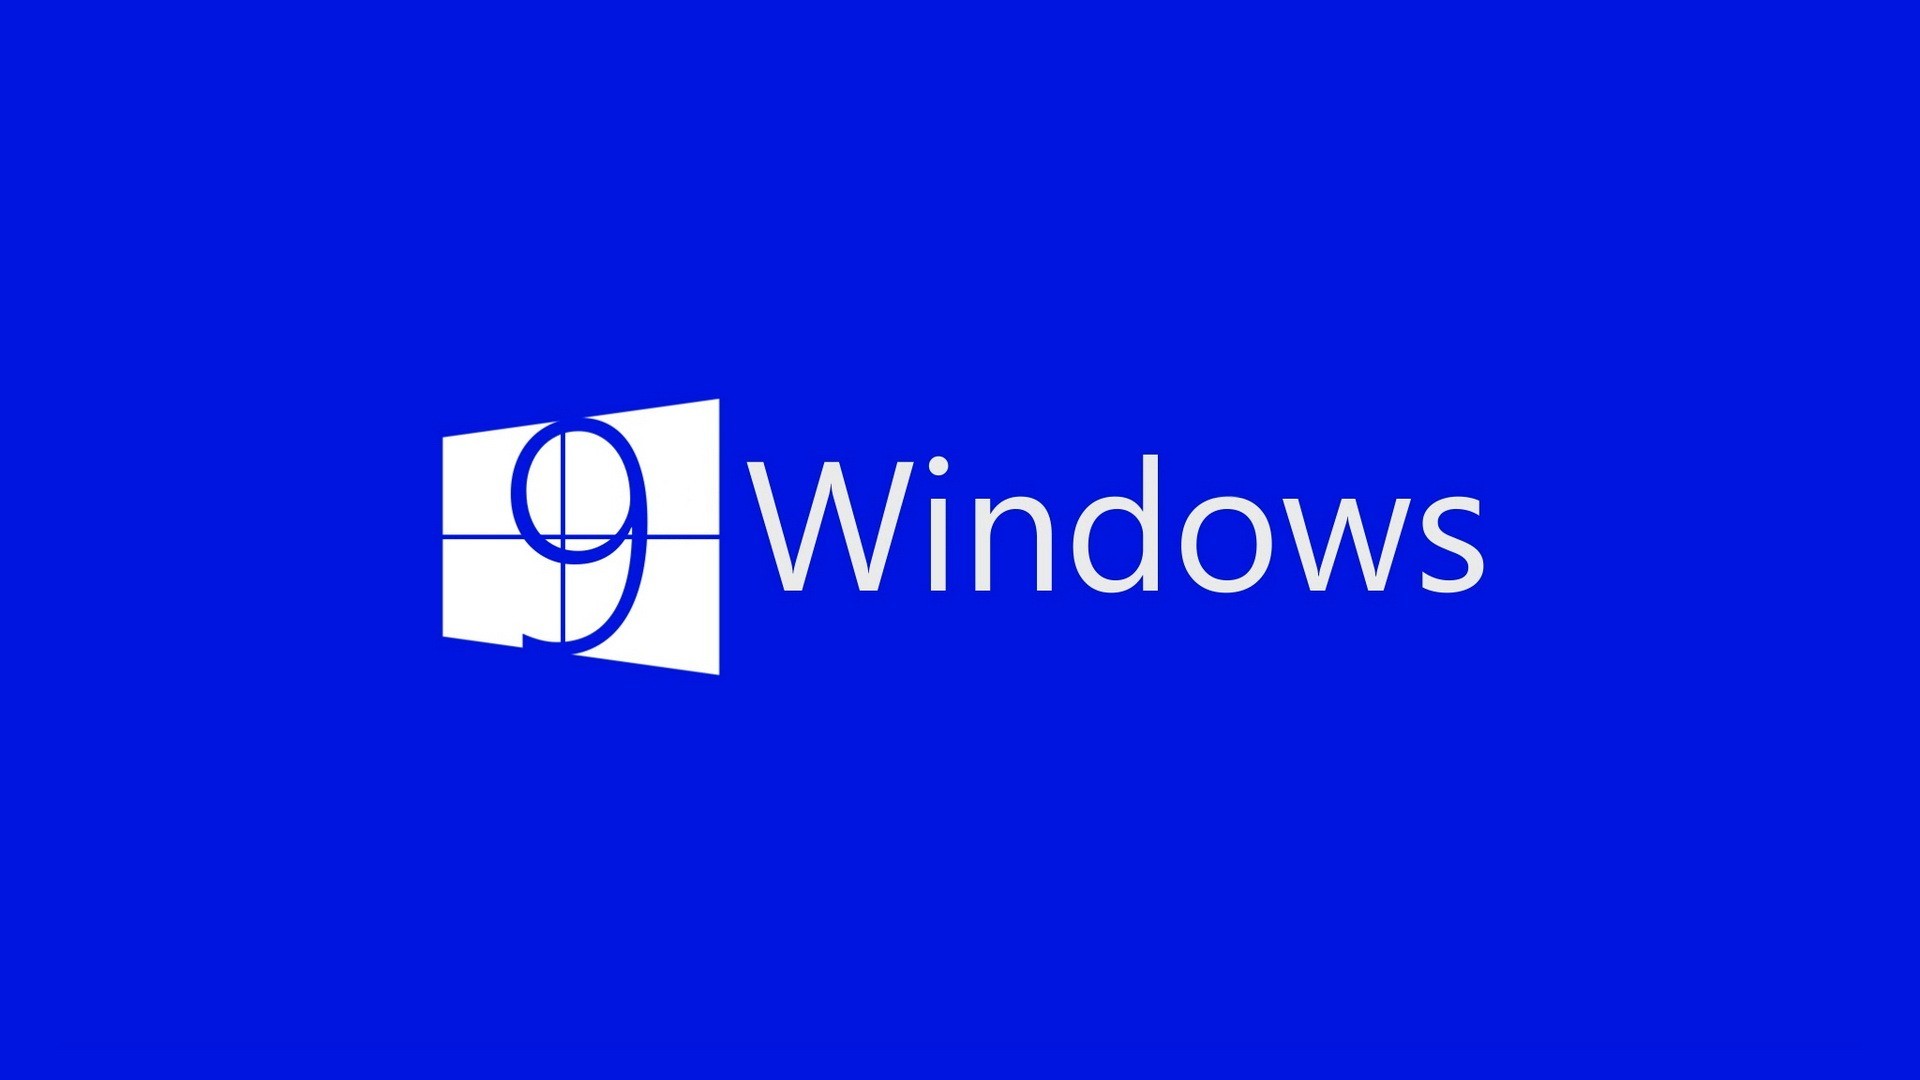 Hình nền đẹp cho Windows 10  Tuyển chọn hình nền Win 10 đẹp mắt